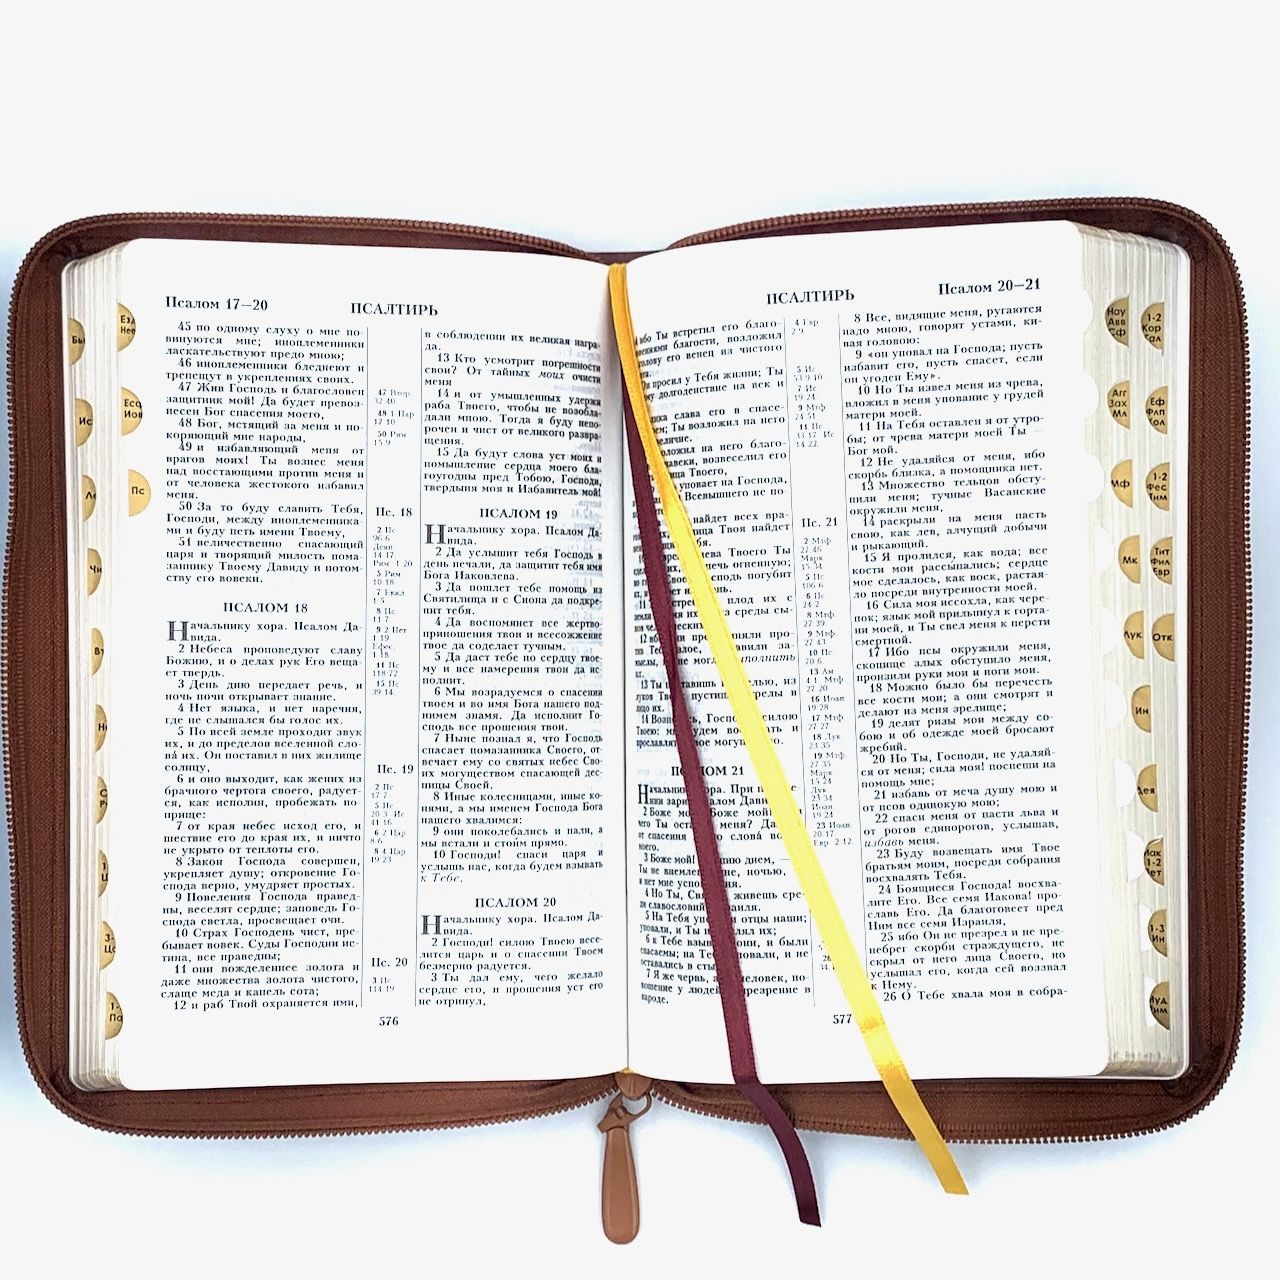 Библия 055zti код 23055-31 надпись "Библия с вензелем", кожаный переплет на молнии с индексами, цвет светло-коричневый с прожилками, средний формат, 143*220 мм